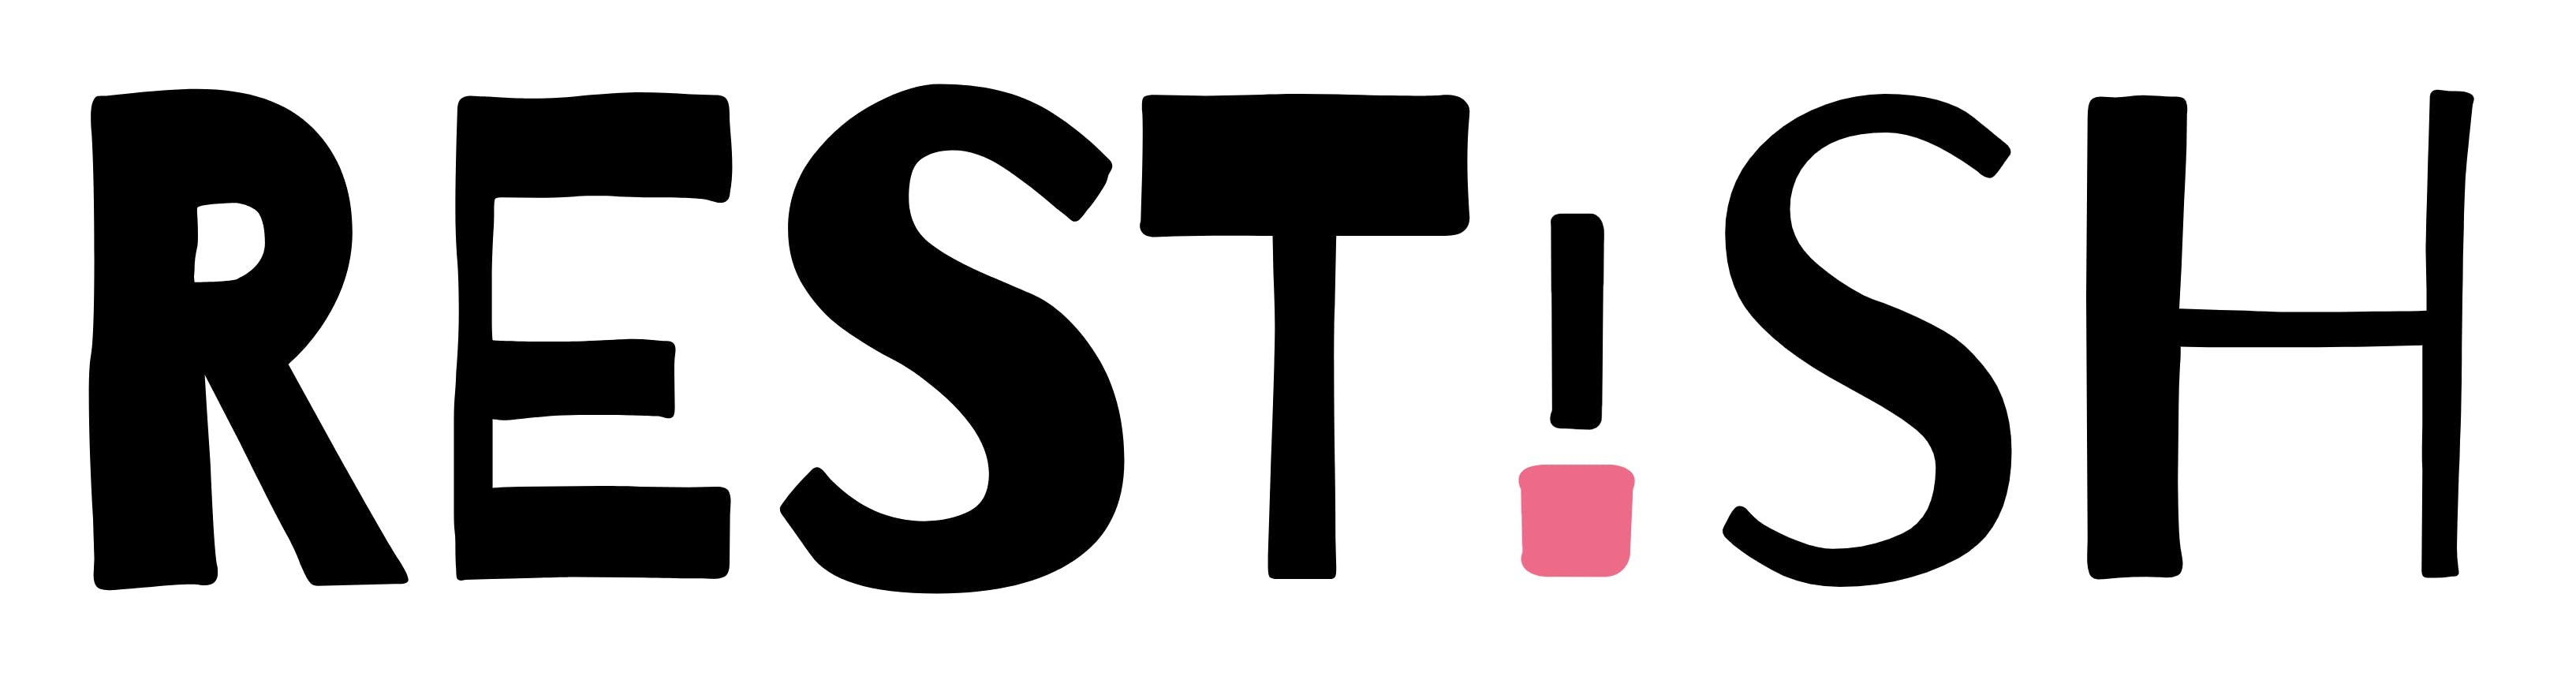 Restish logo